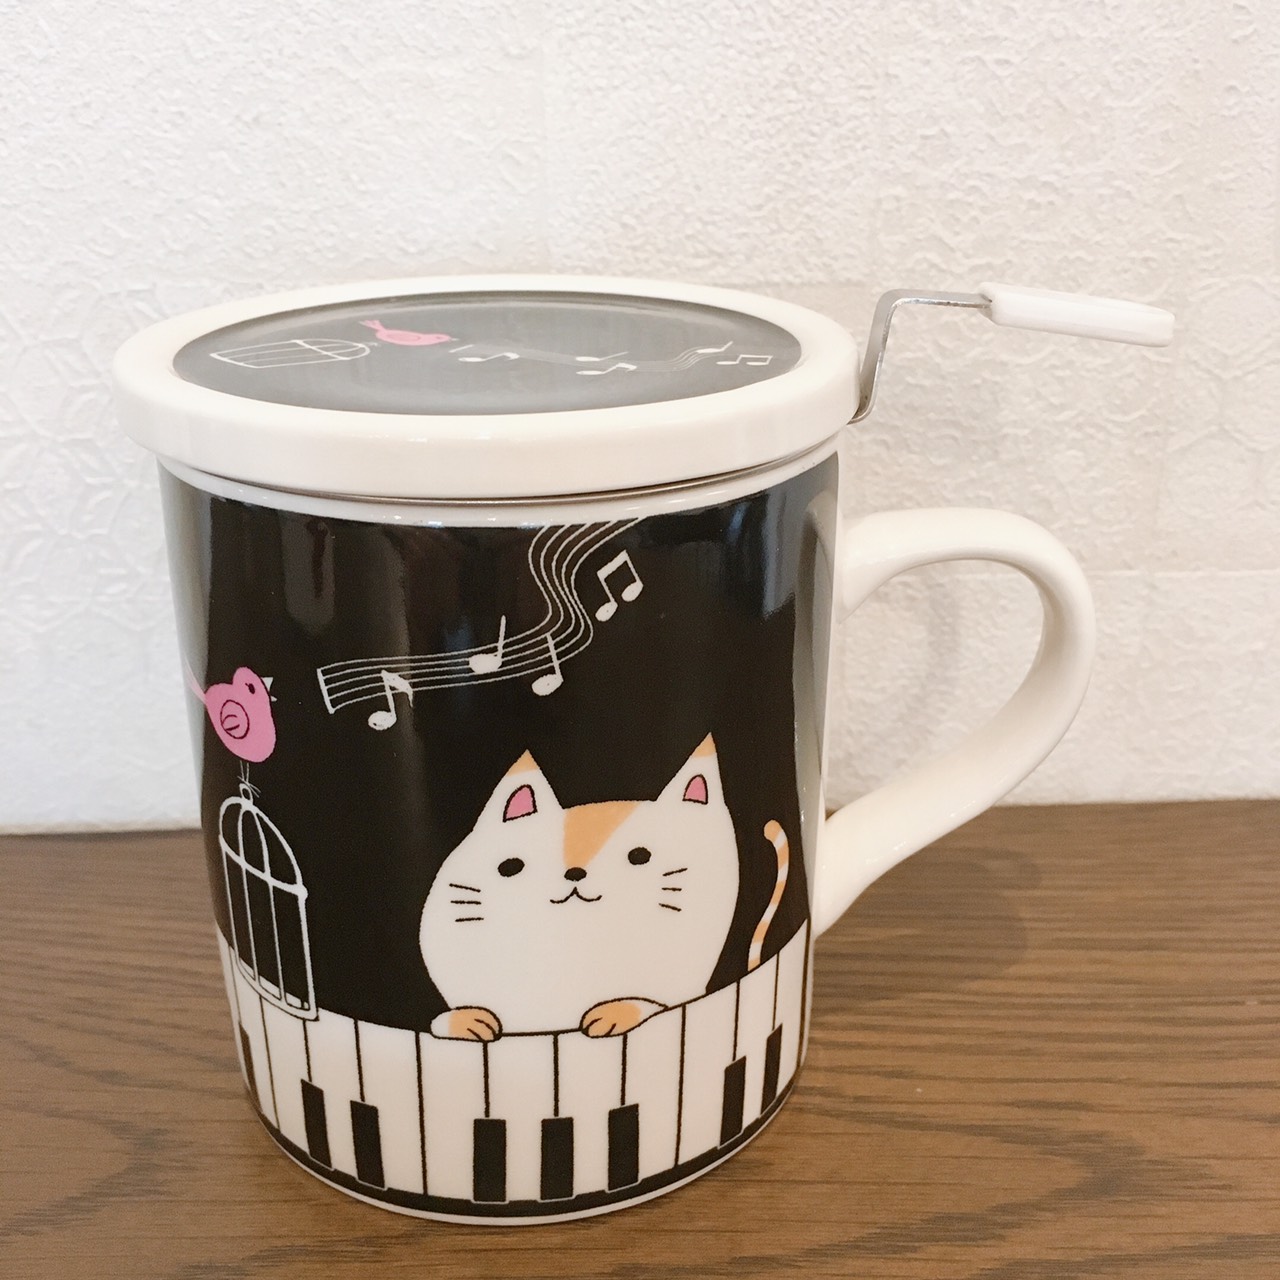 蓋と茶漉し付の猫のマグカップのメイン画像